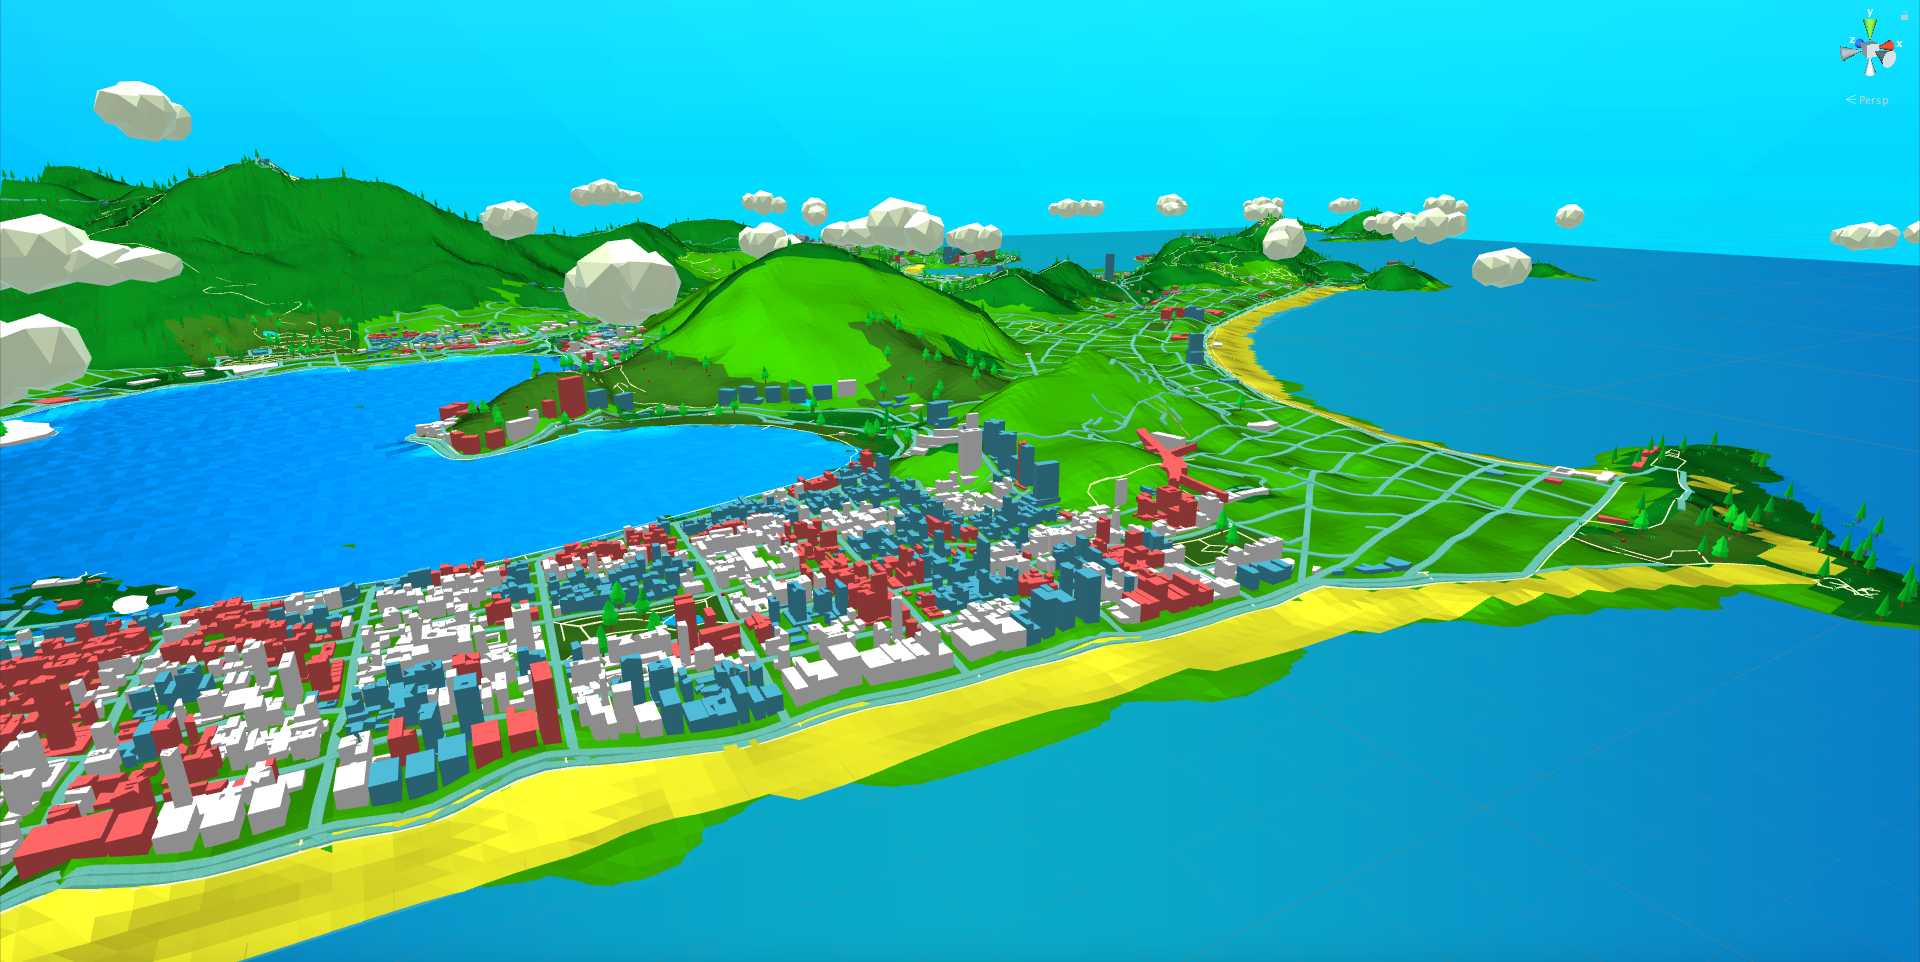 Flat Map - Pokémon GO Style - GO Map - Unity 3D Asset